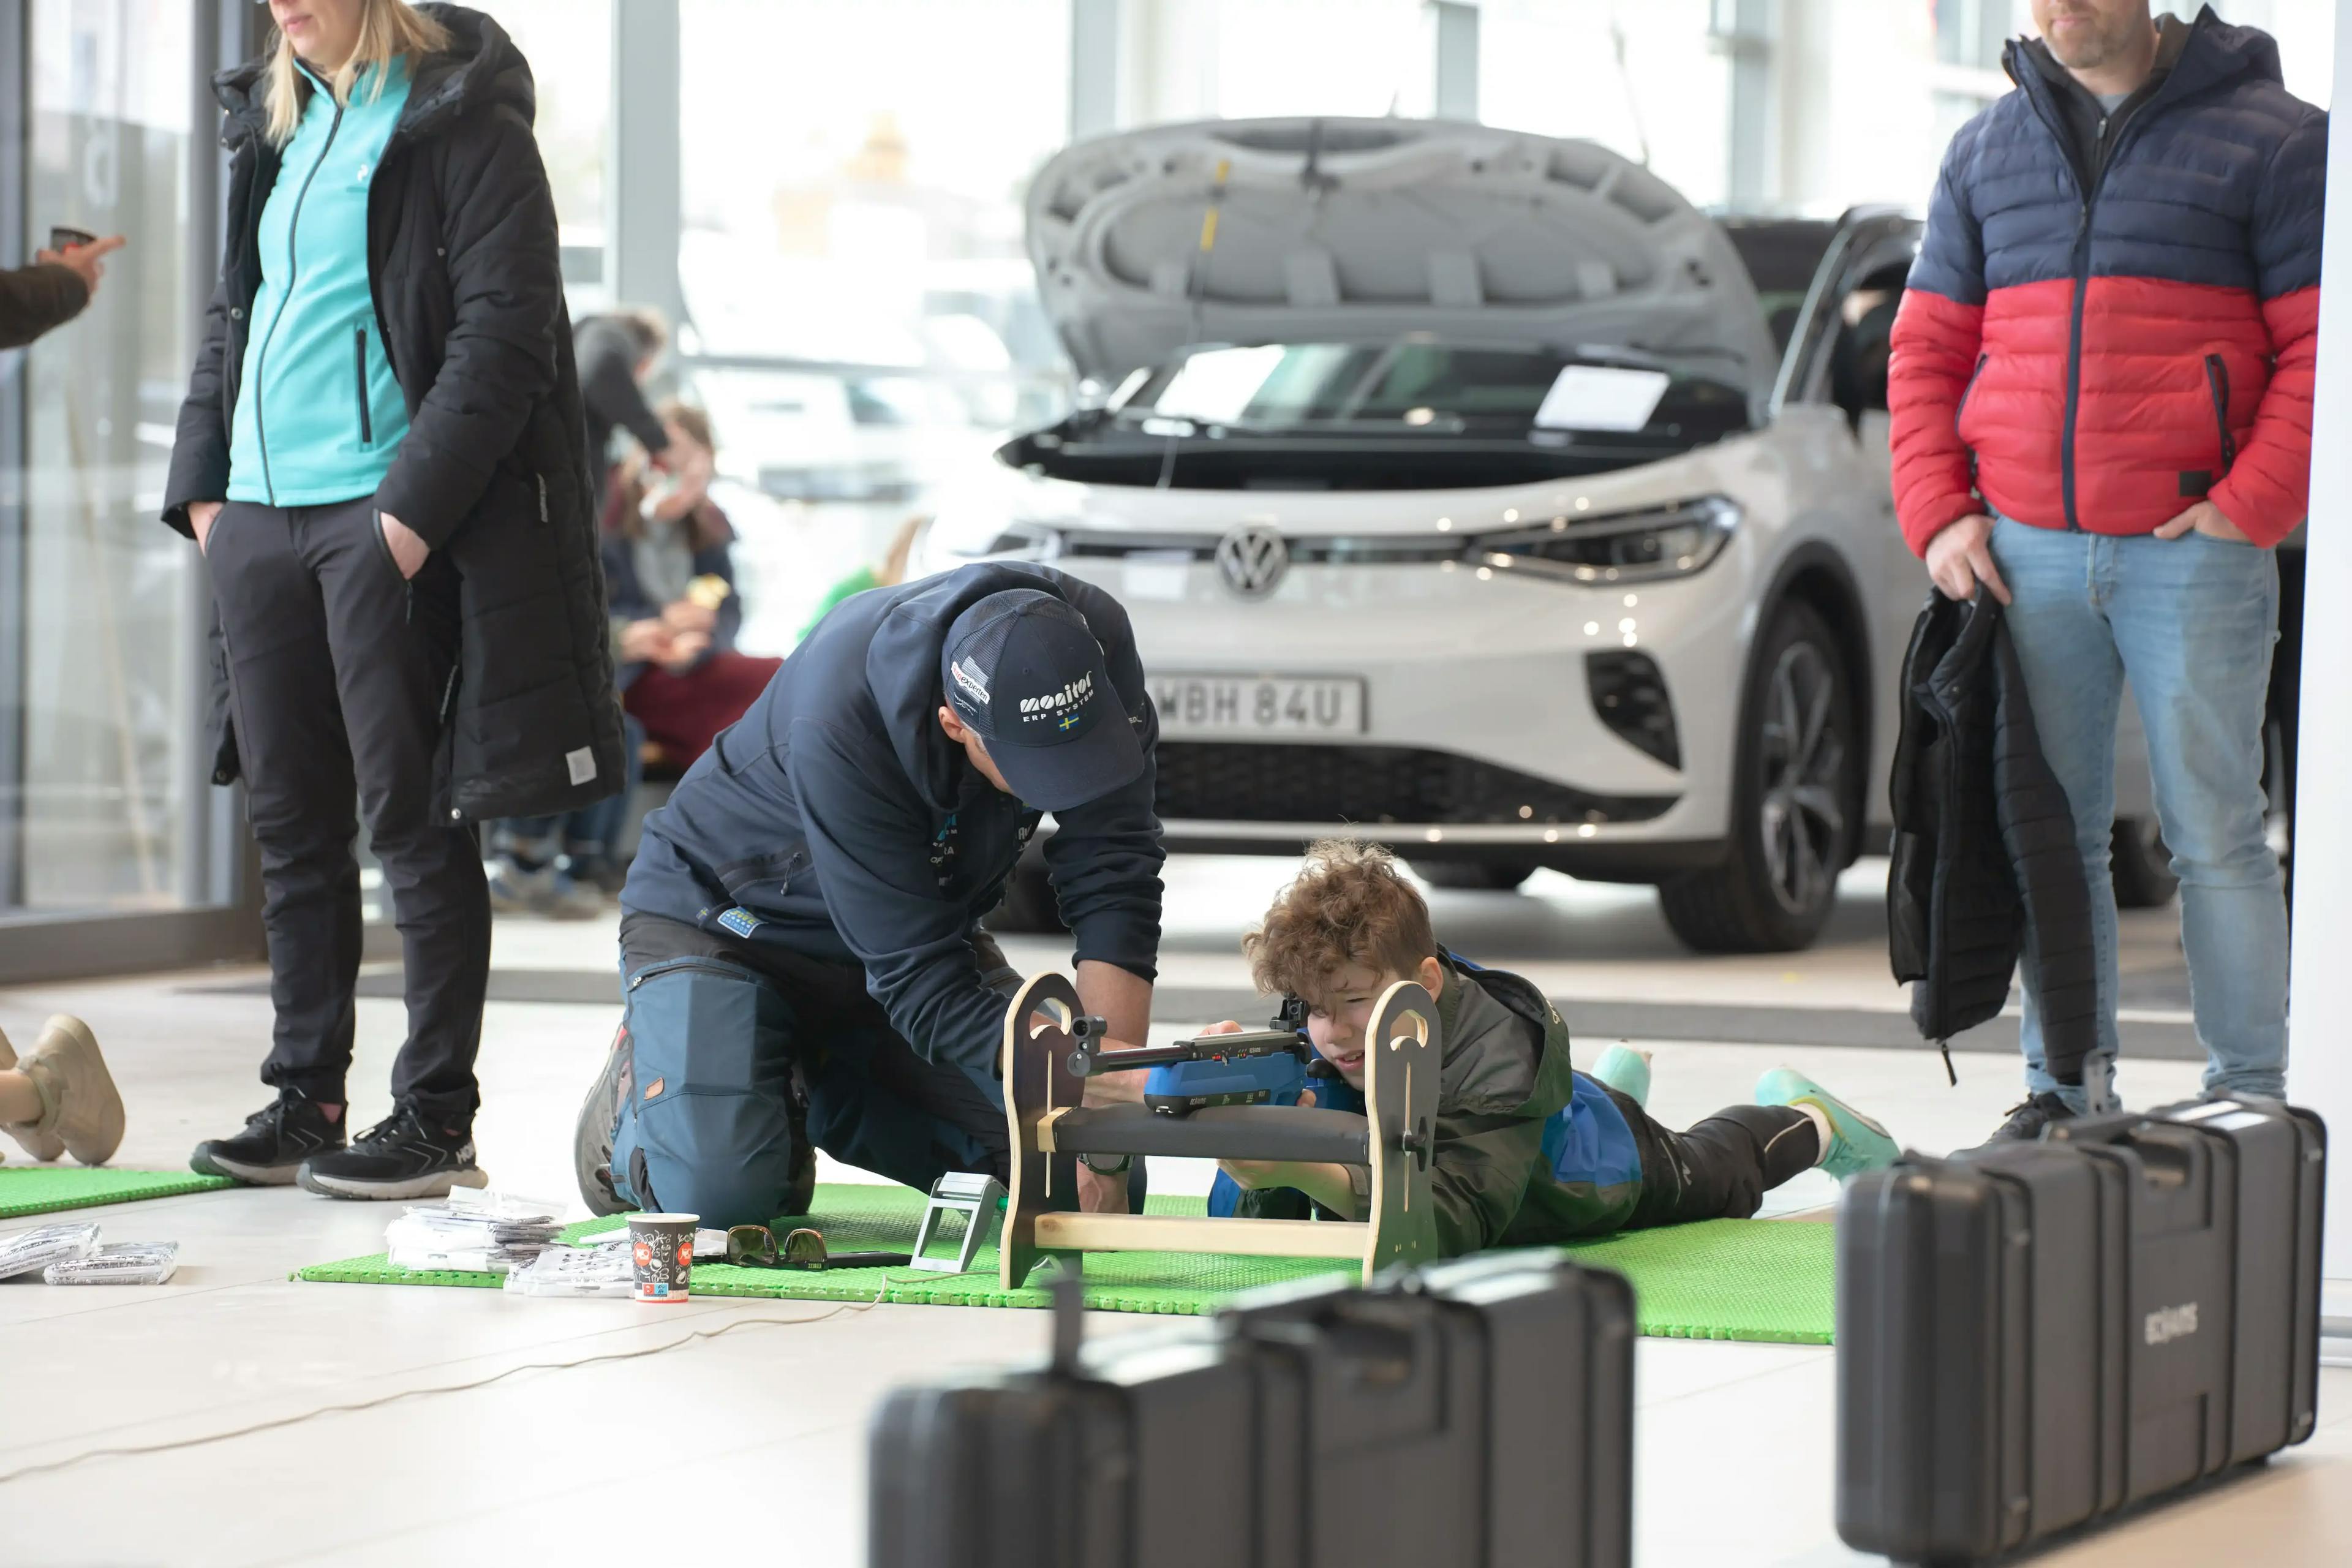 Prova på skidskytte i skidskyttesimulatorn i Volkswagen-hallen kl 11.00-14.00.